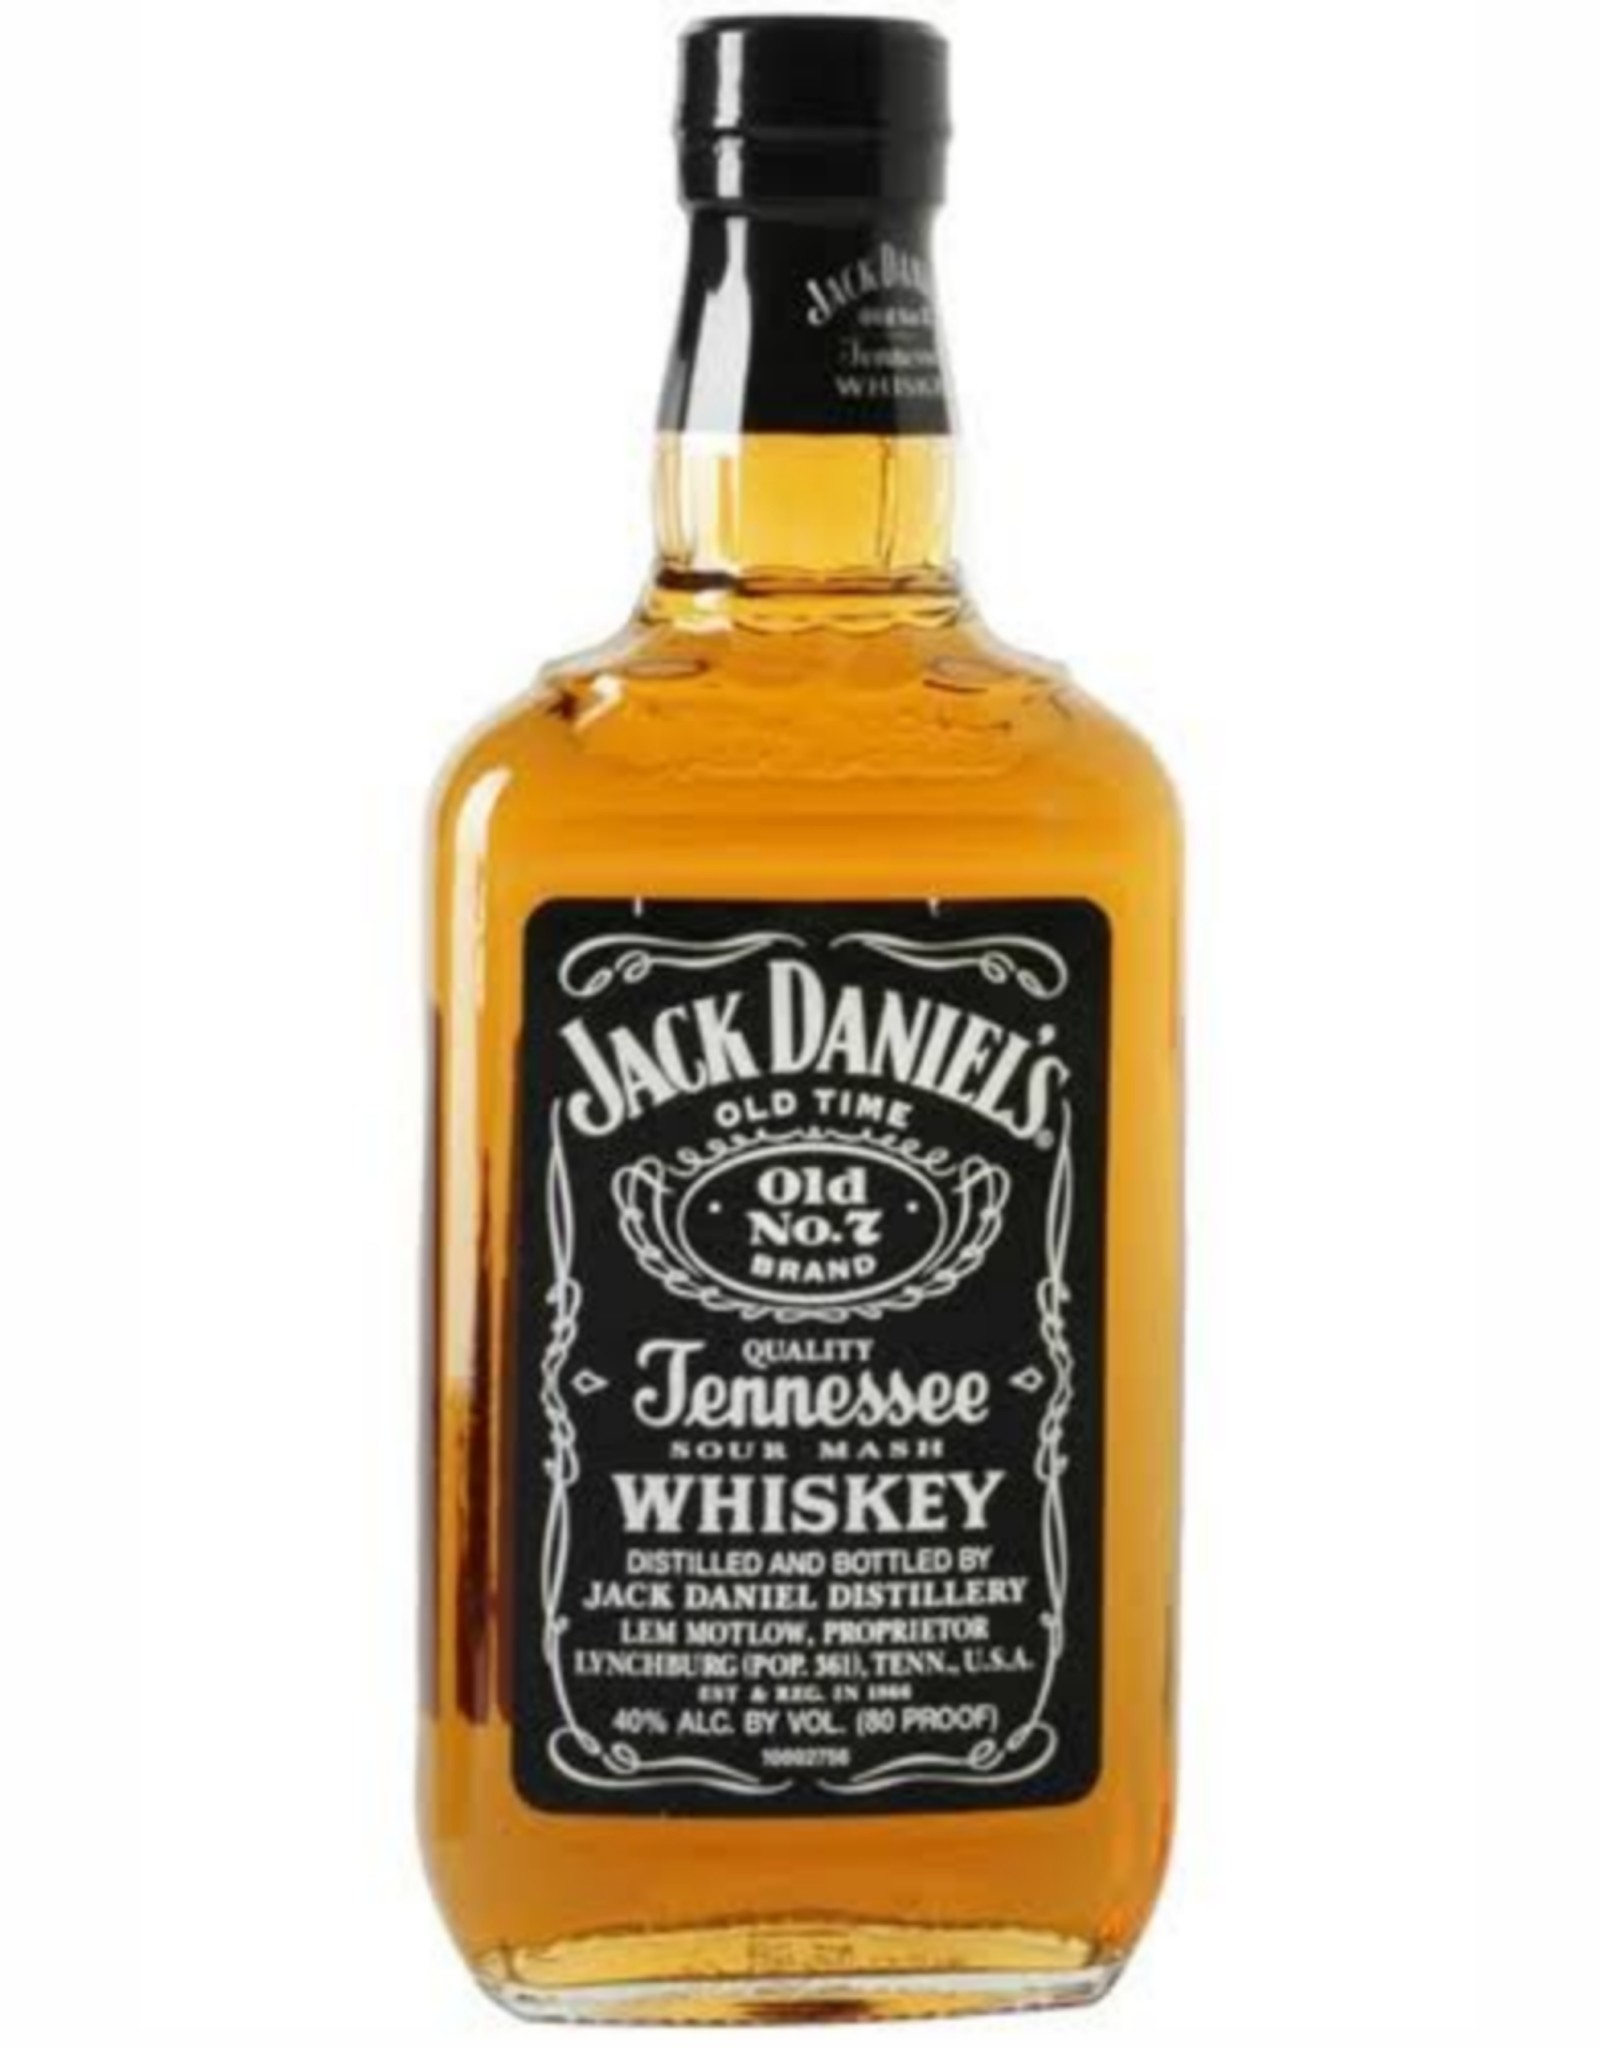 Jack Daniel's JACK DANIEL'S - OLD NO. 7 - BLACK LABEL - 80 PR - 375ML